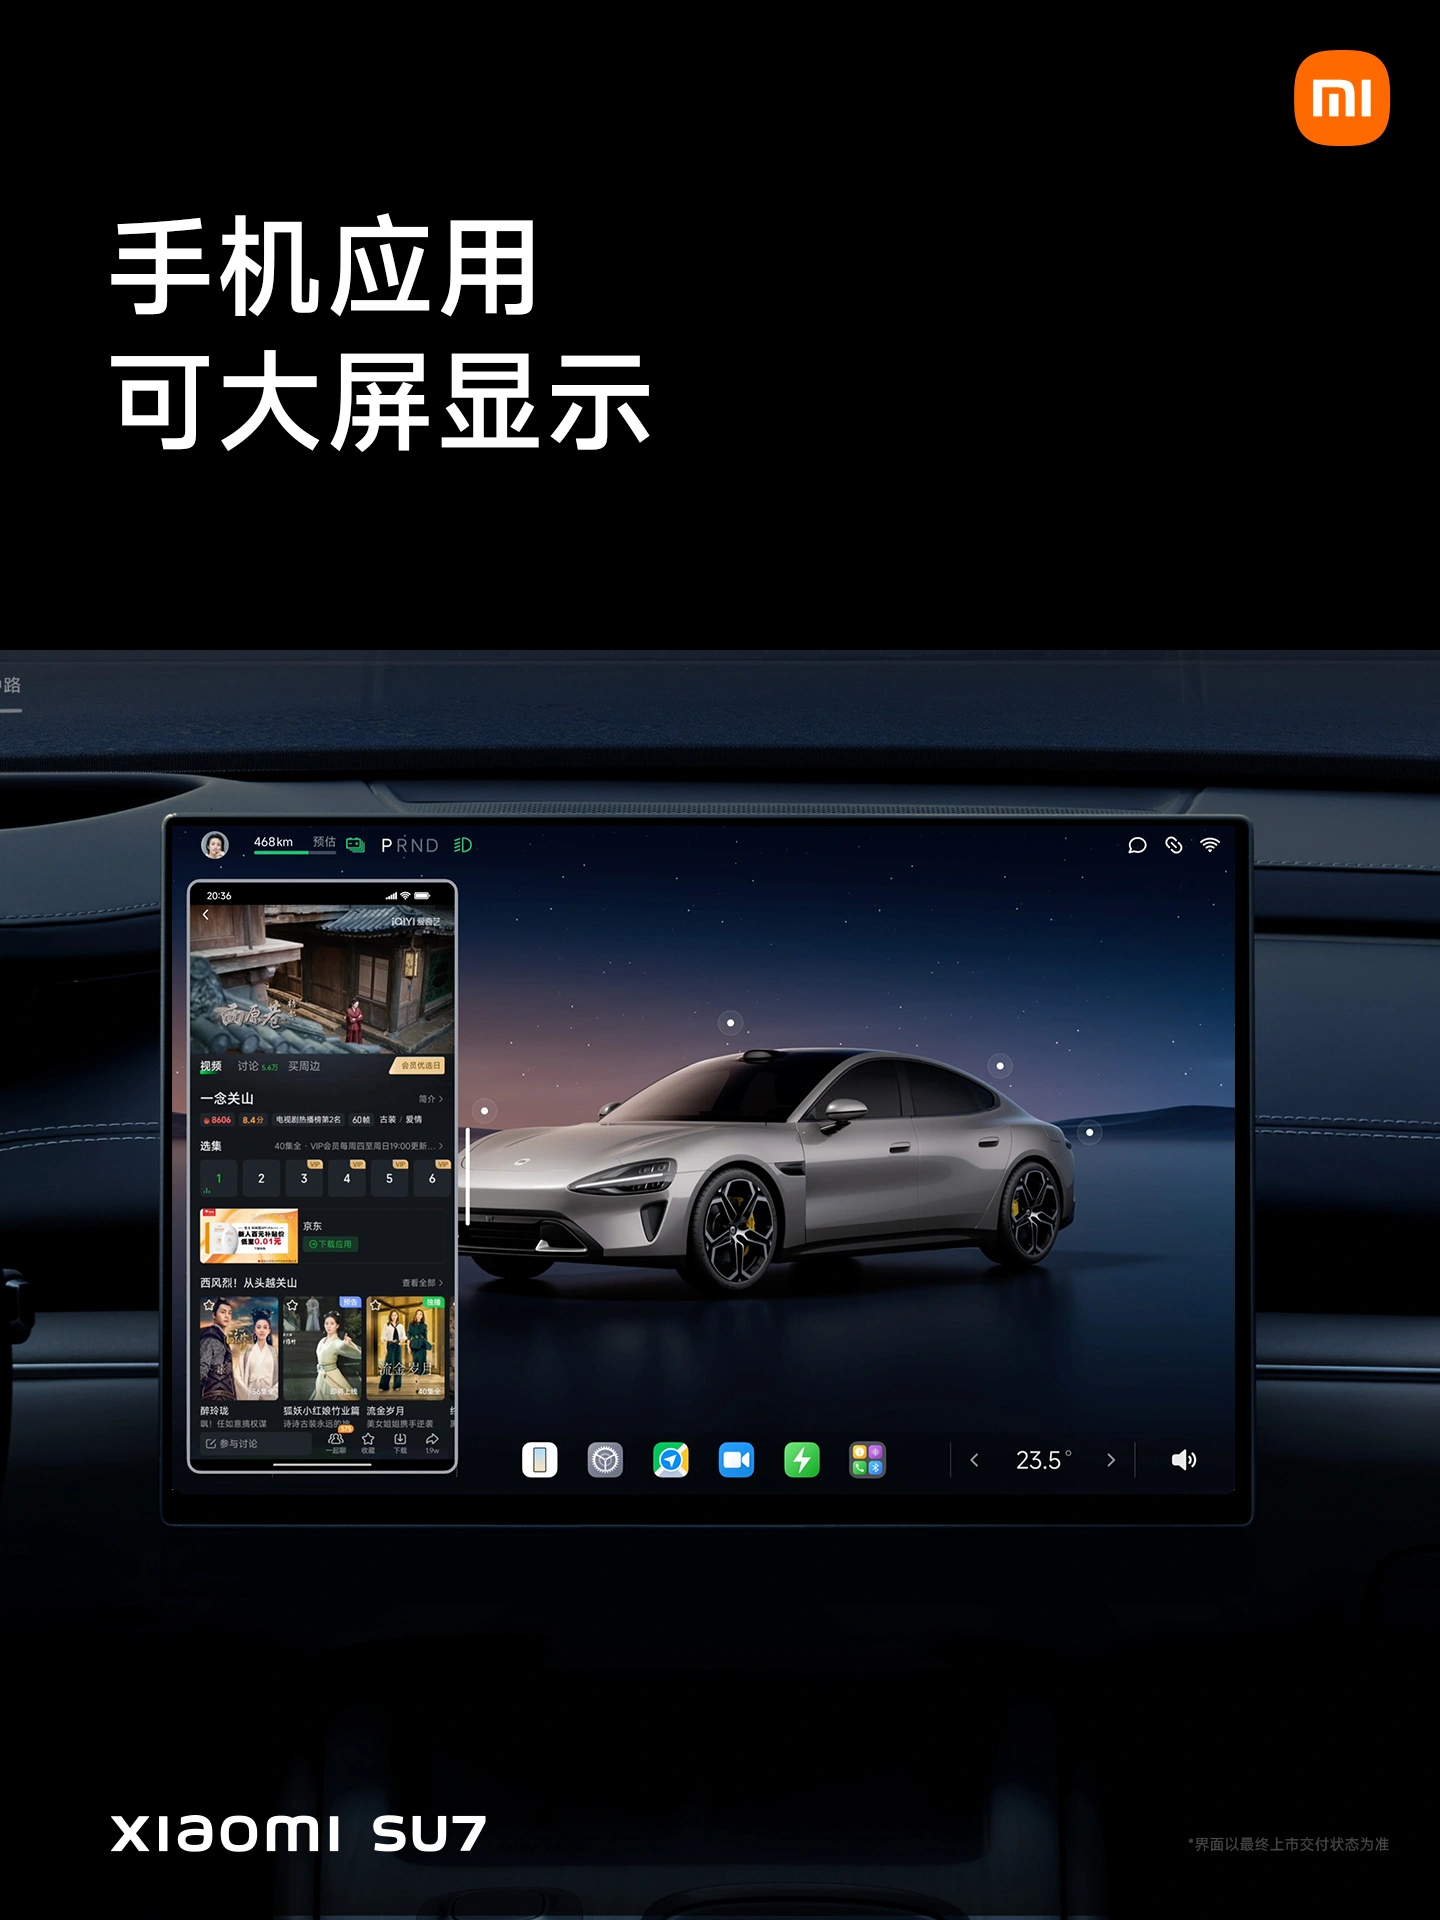 小米汽车 SU7 / Pro / Max 正式发布并上市，售价 21.59 万元-29.99 万元